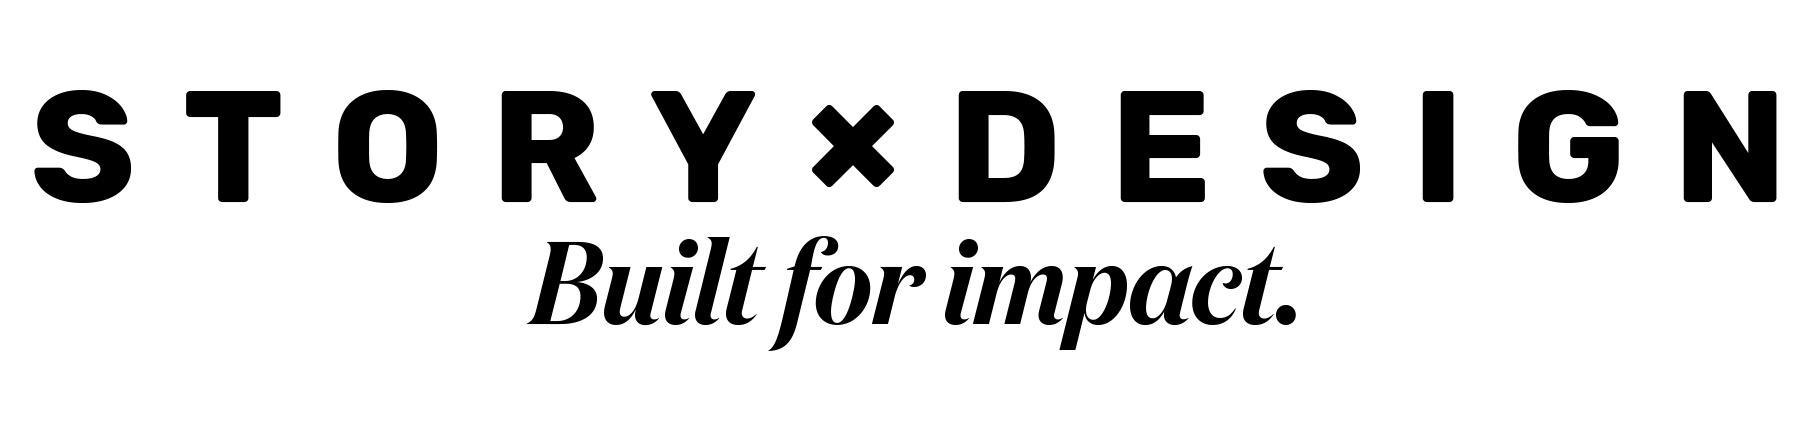 logo full_black